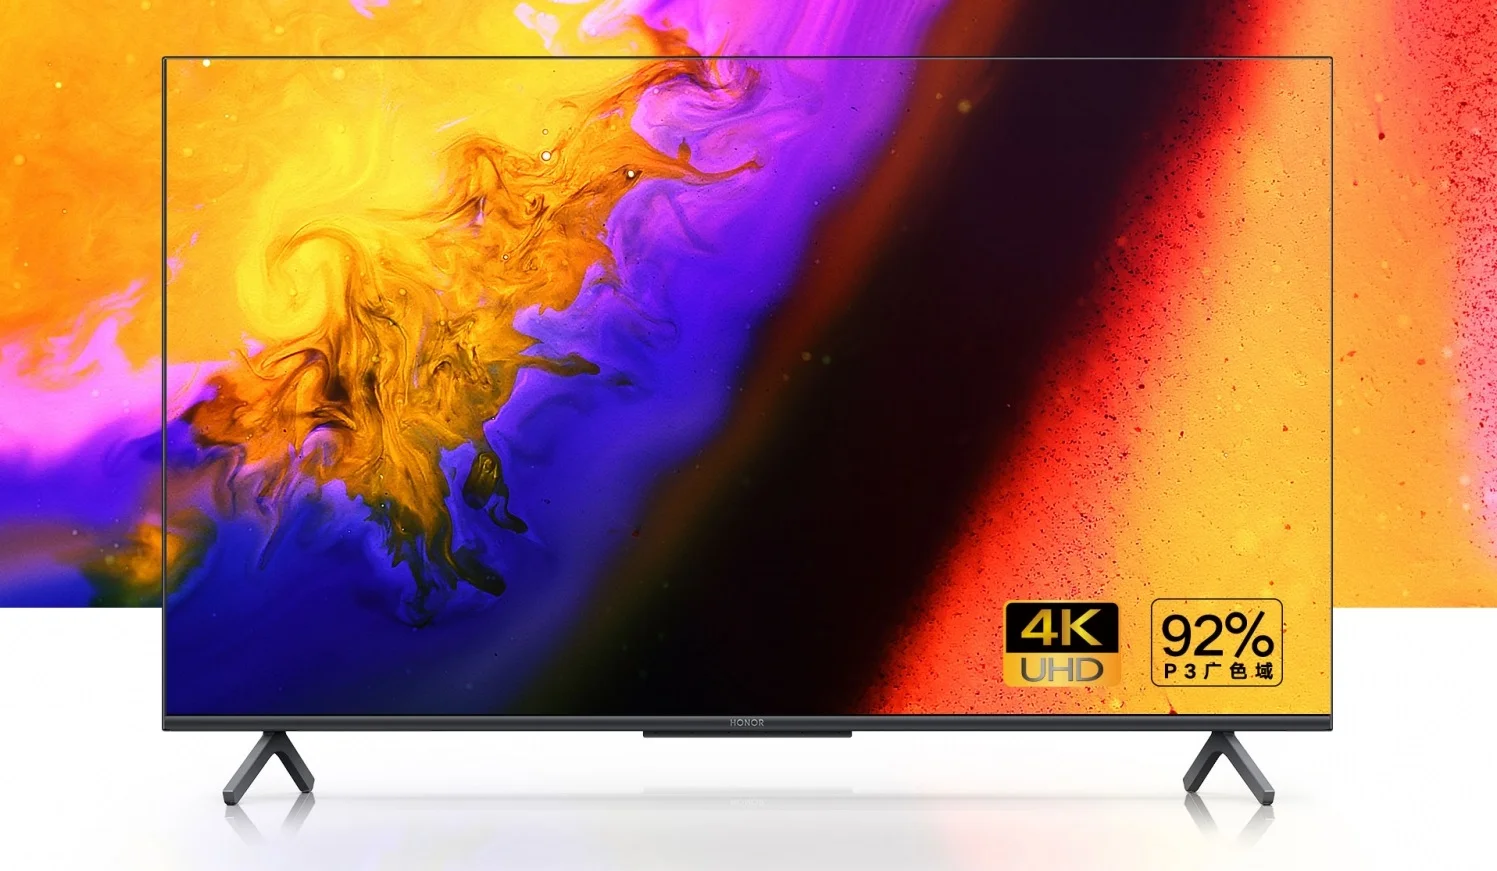 Представлена серия бюджетных «умных» 4К-телевизоров Honor X1 Smart TV - фото 1